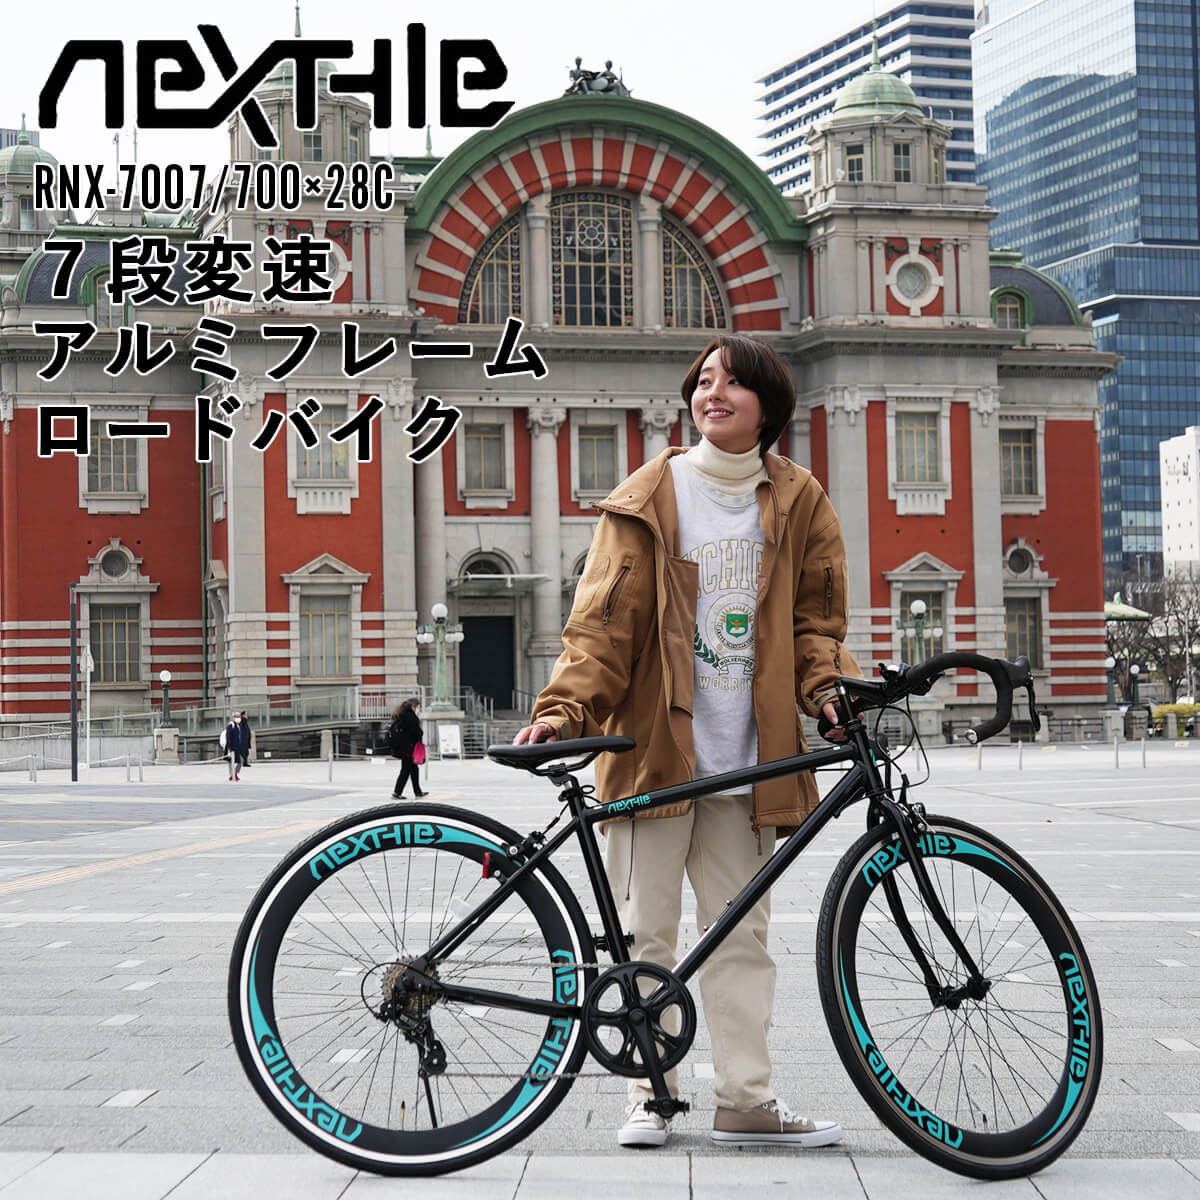 ロードバイク 自転車 700×28C シマノ7段変速 軽量 アルミフレーム 初心者 女性 ネクスタイル NEXTYLE RNX-7007